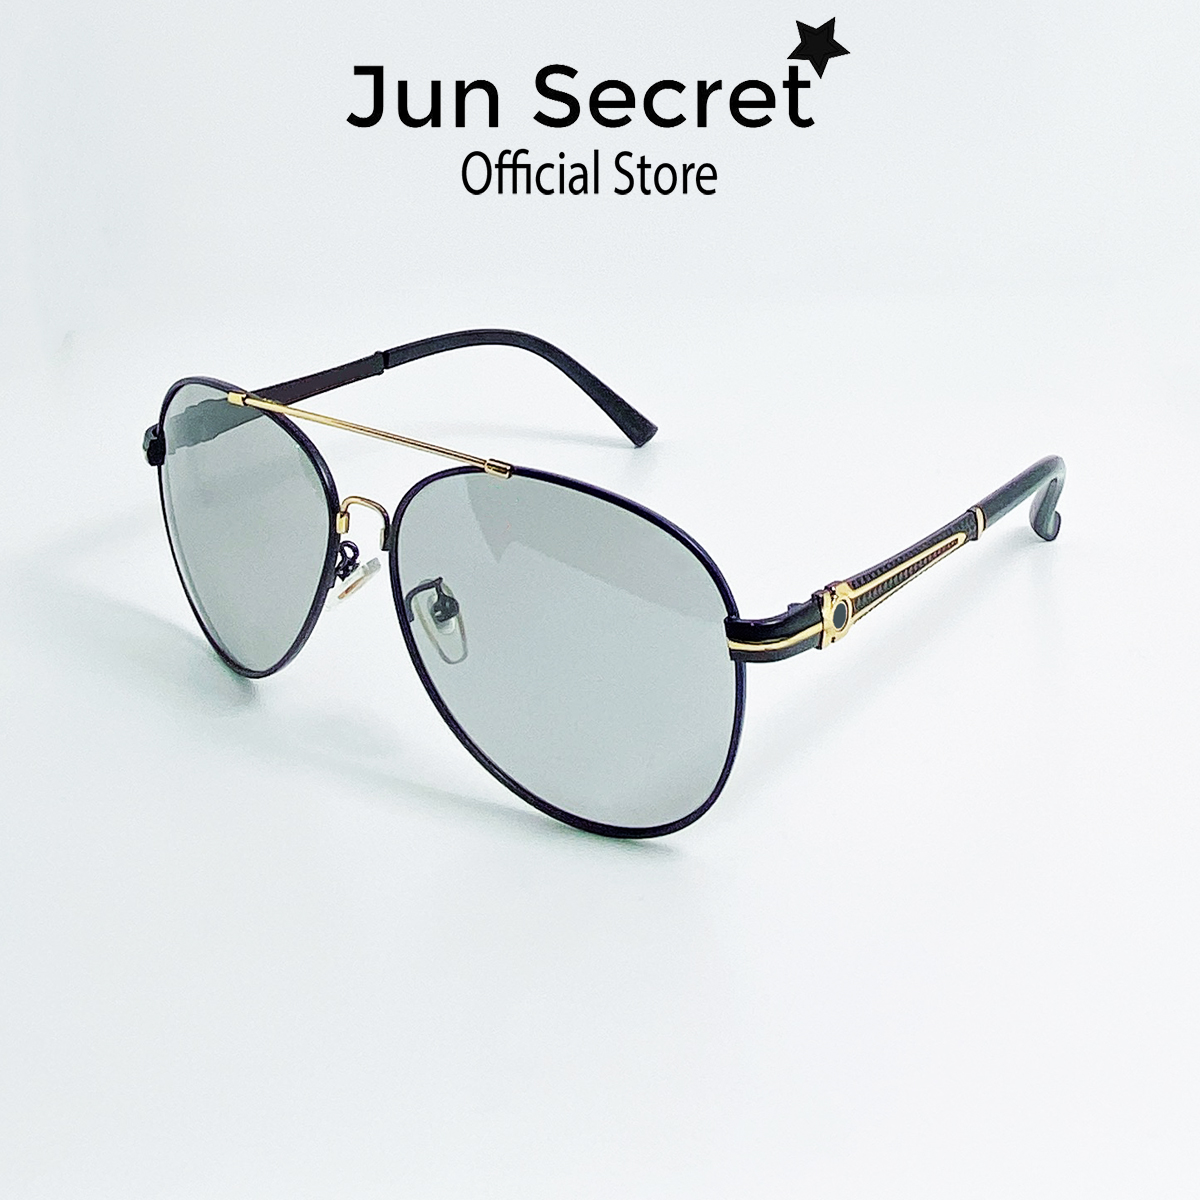 Mắt kính nam thời trang cao cấp Jun Secret gọng dẻo thumbnail